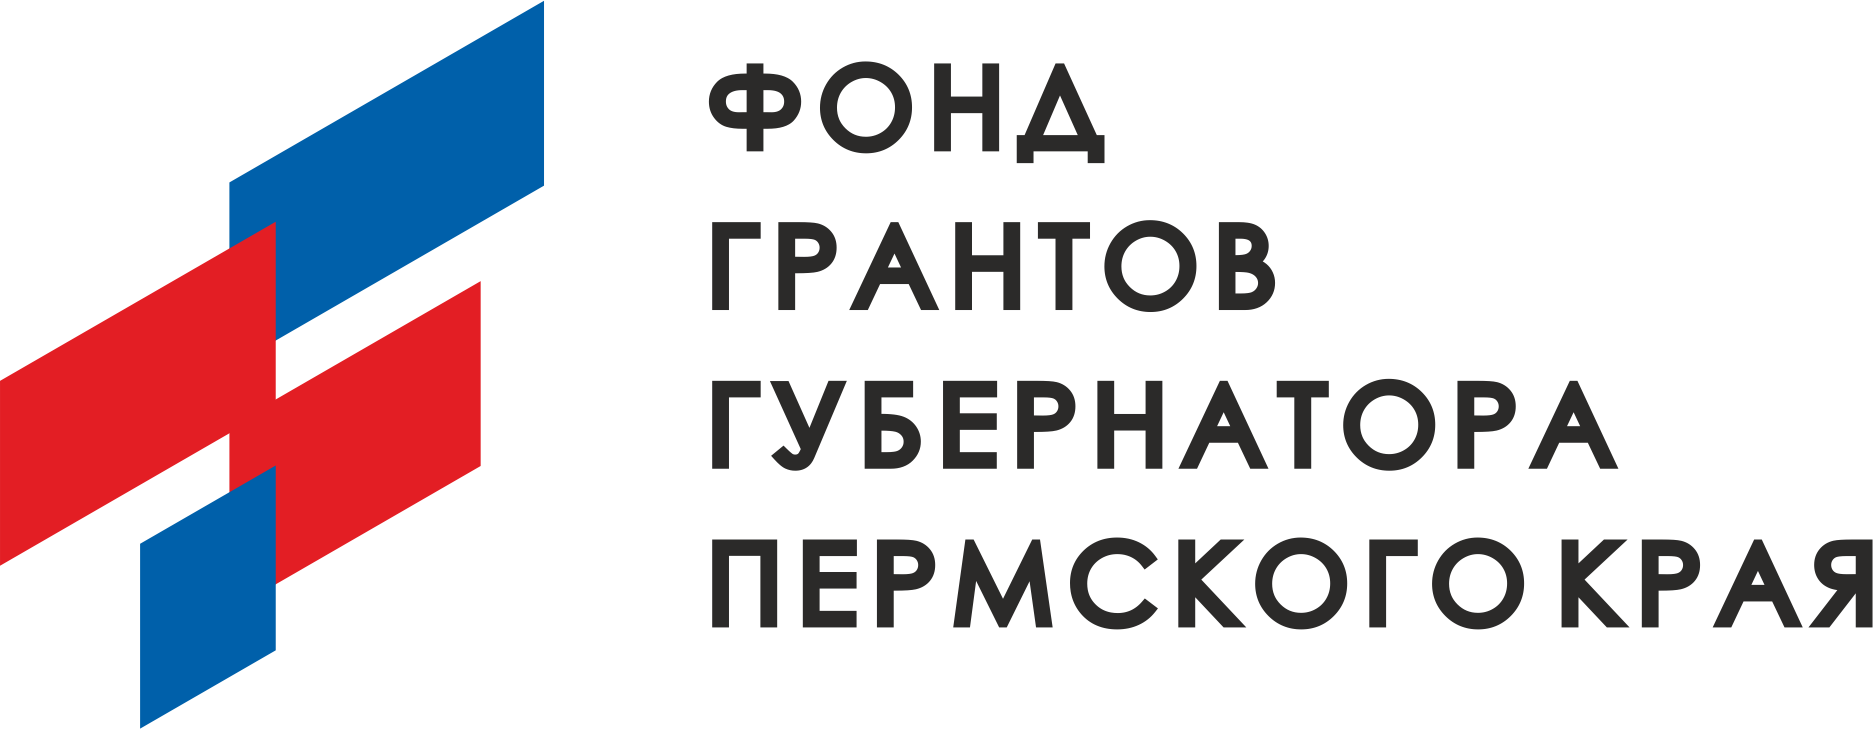 логотип фонда губернатора пермского края 